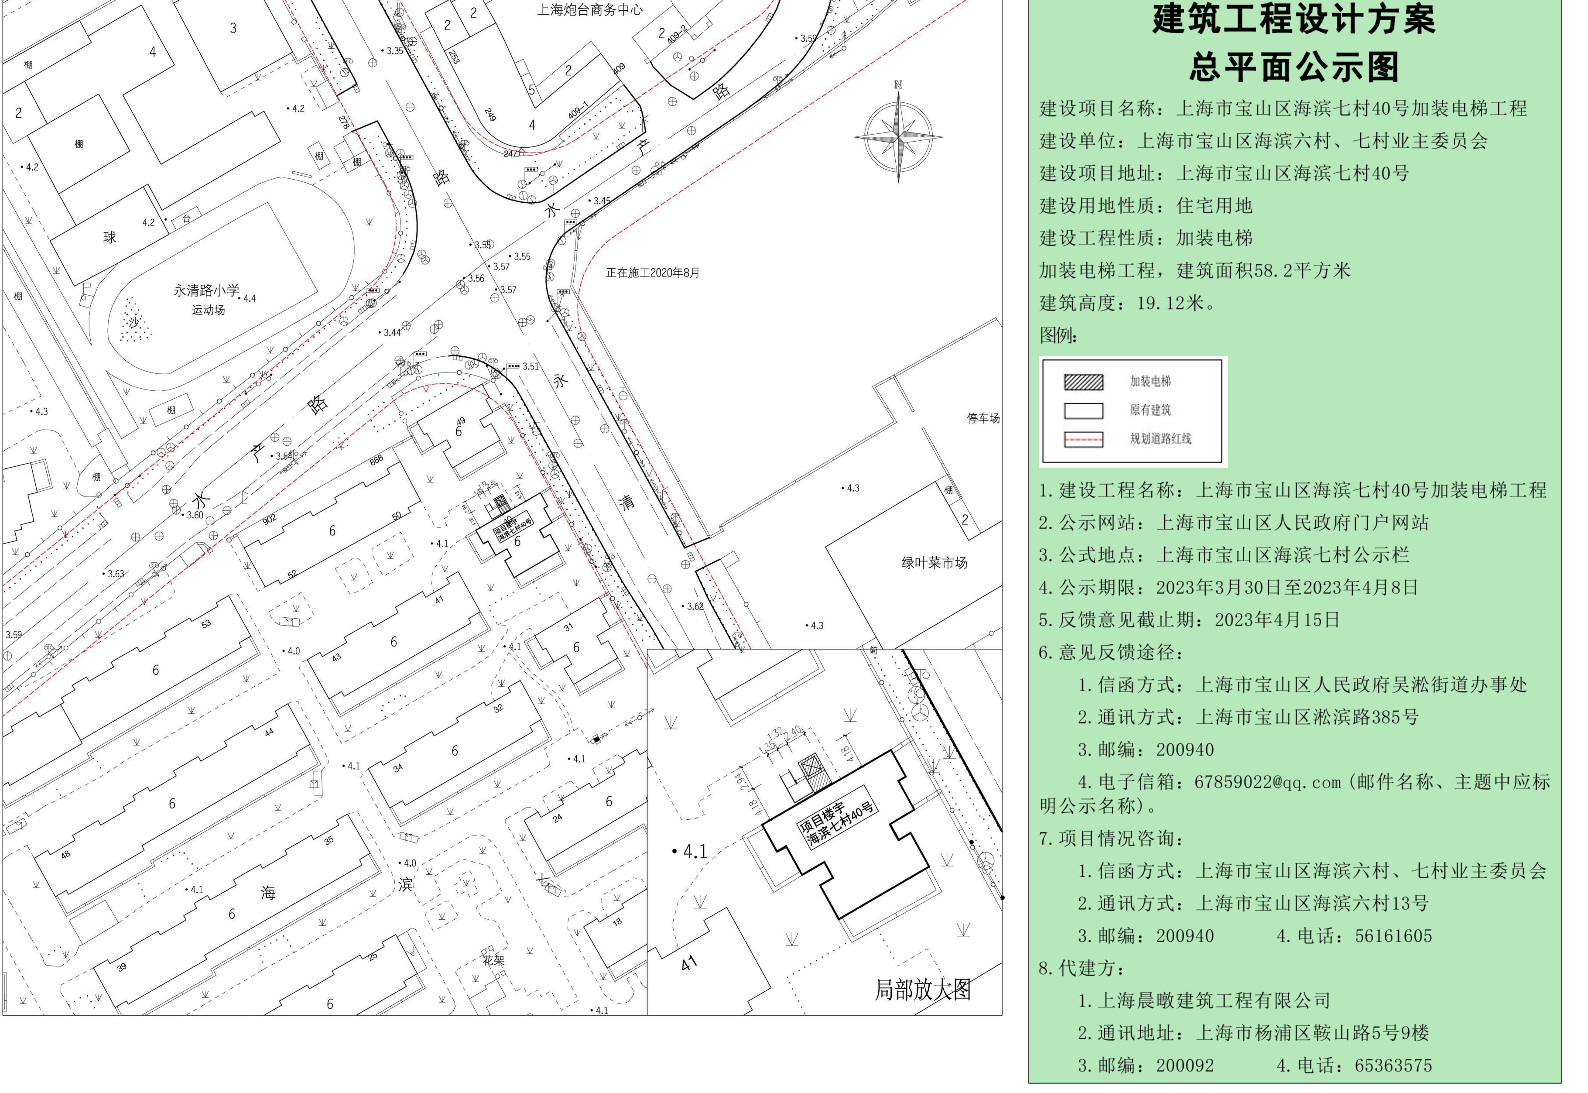 海滨七村40号规划公示图.pdf